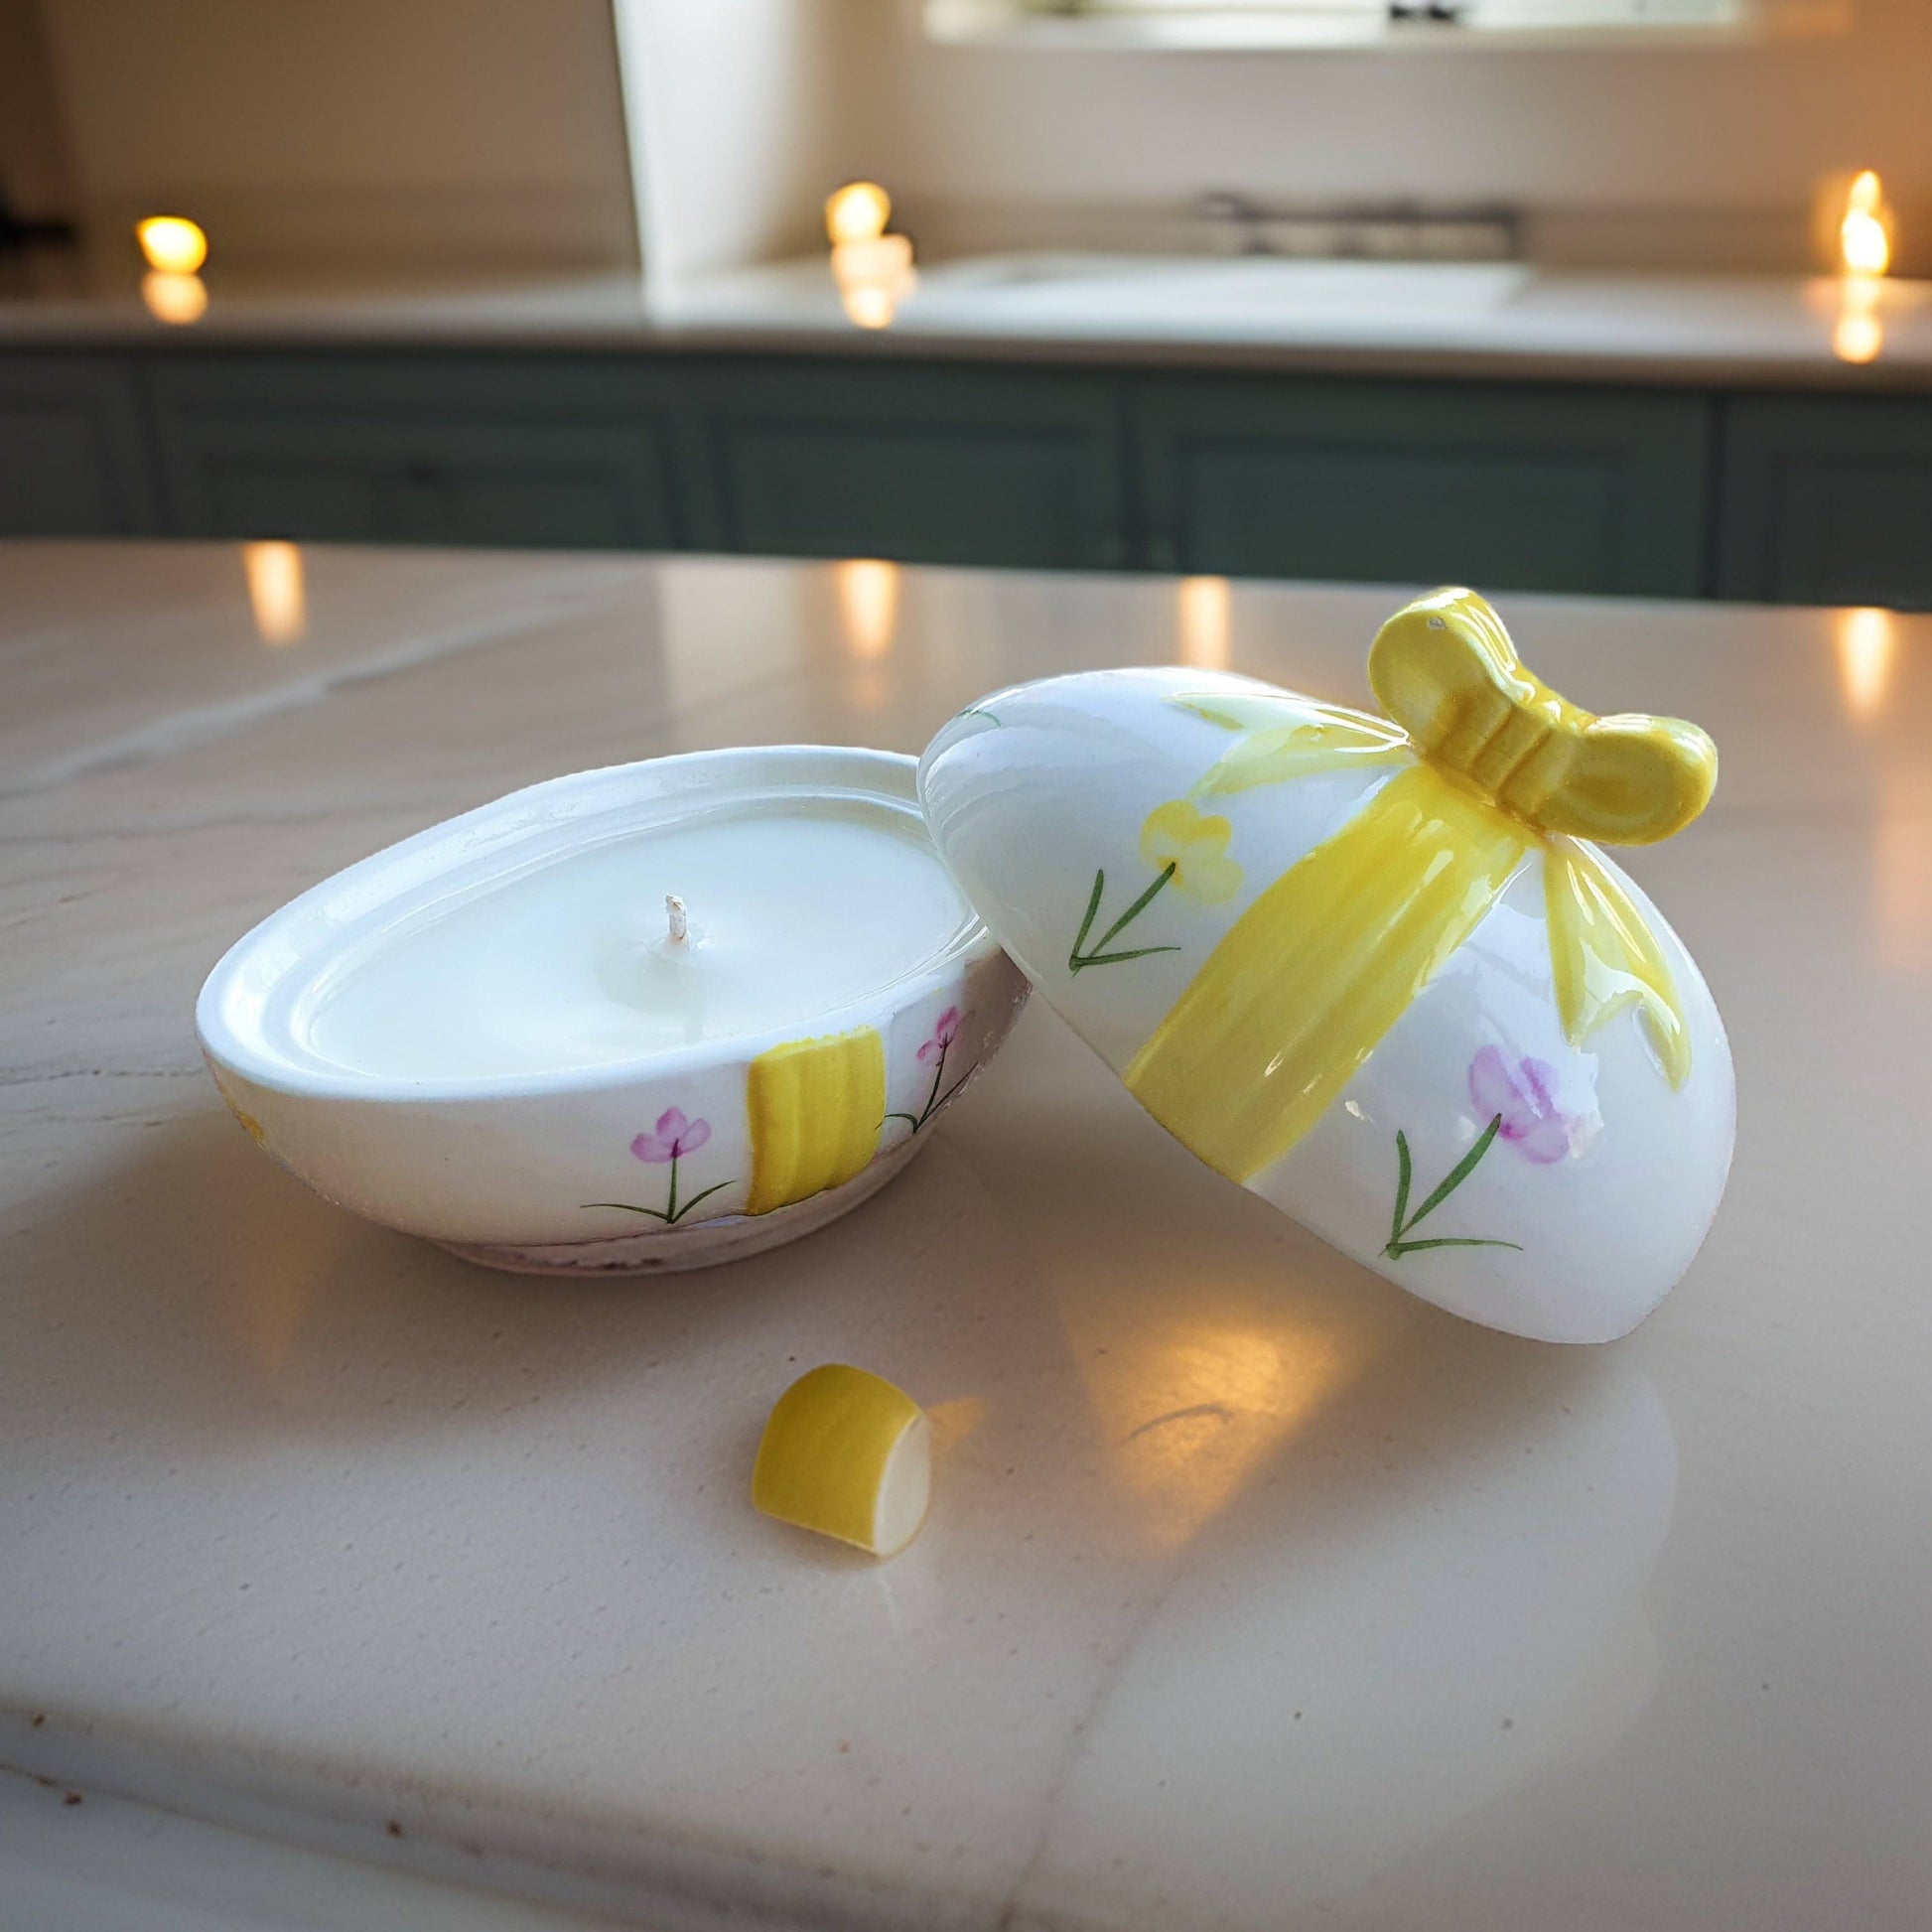 Egg shaped trinket dish candle